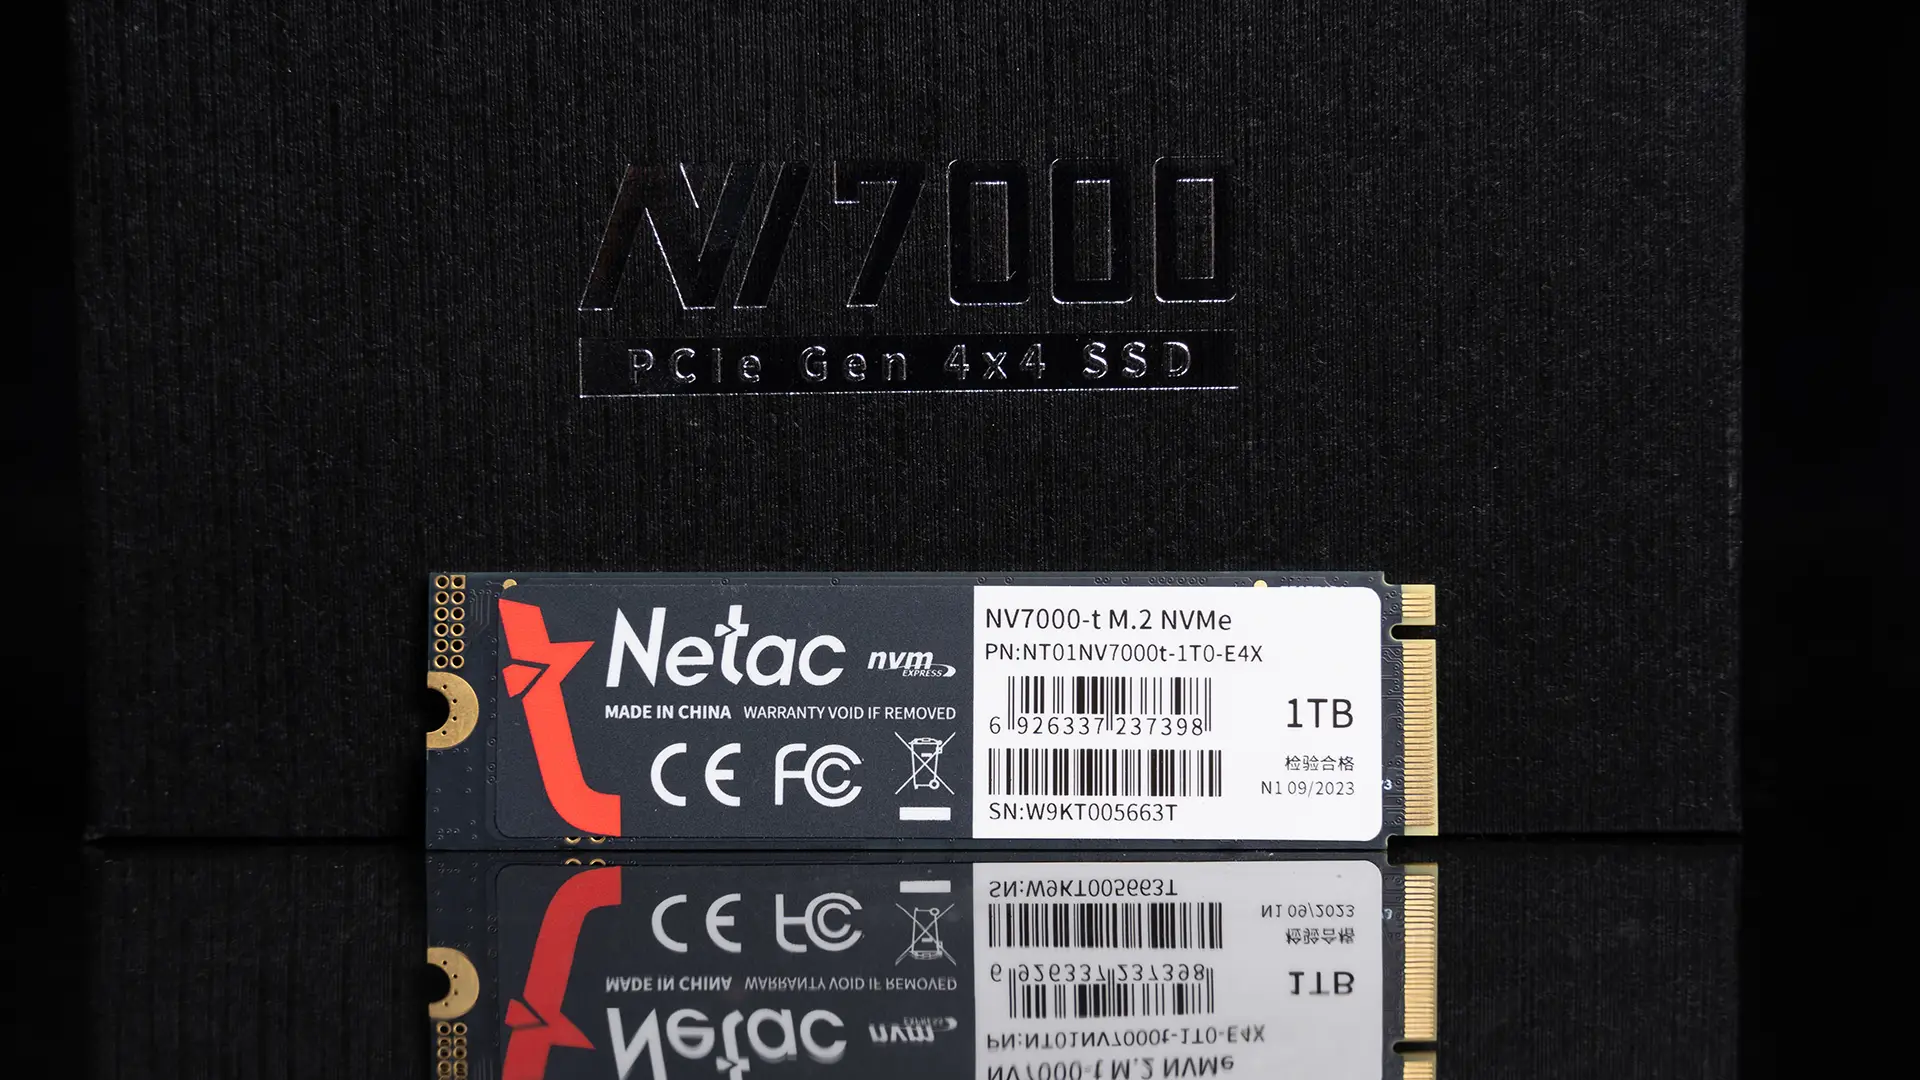 DDR51G 显卡：性能强劲但价格较高，选购需结合个人需求  第3张